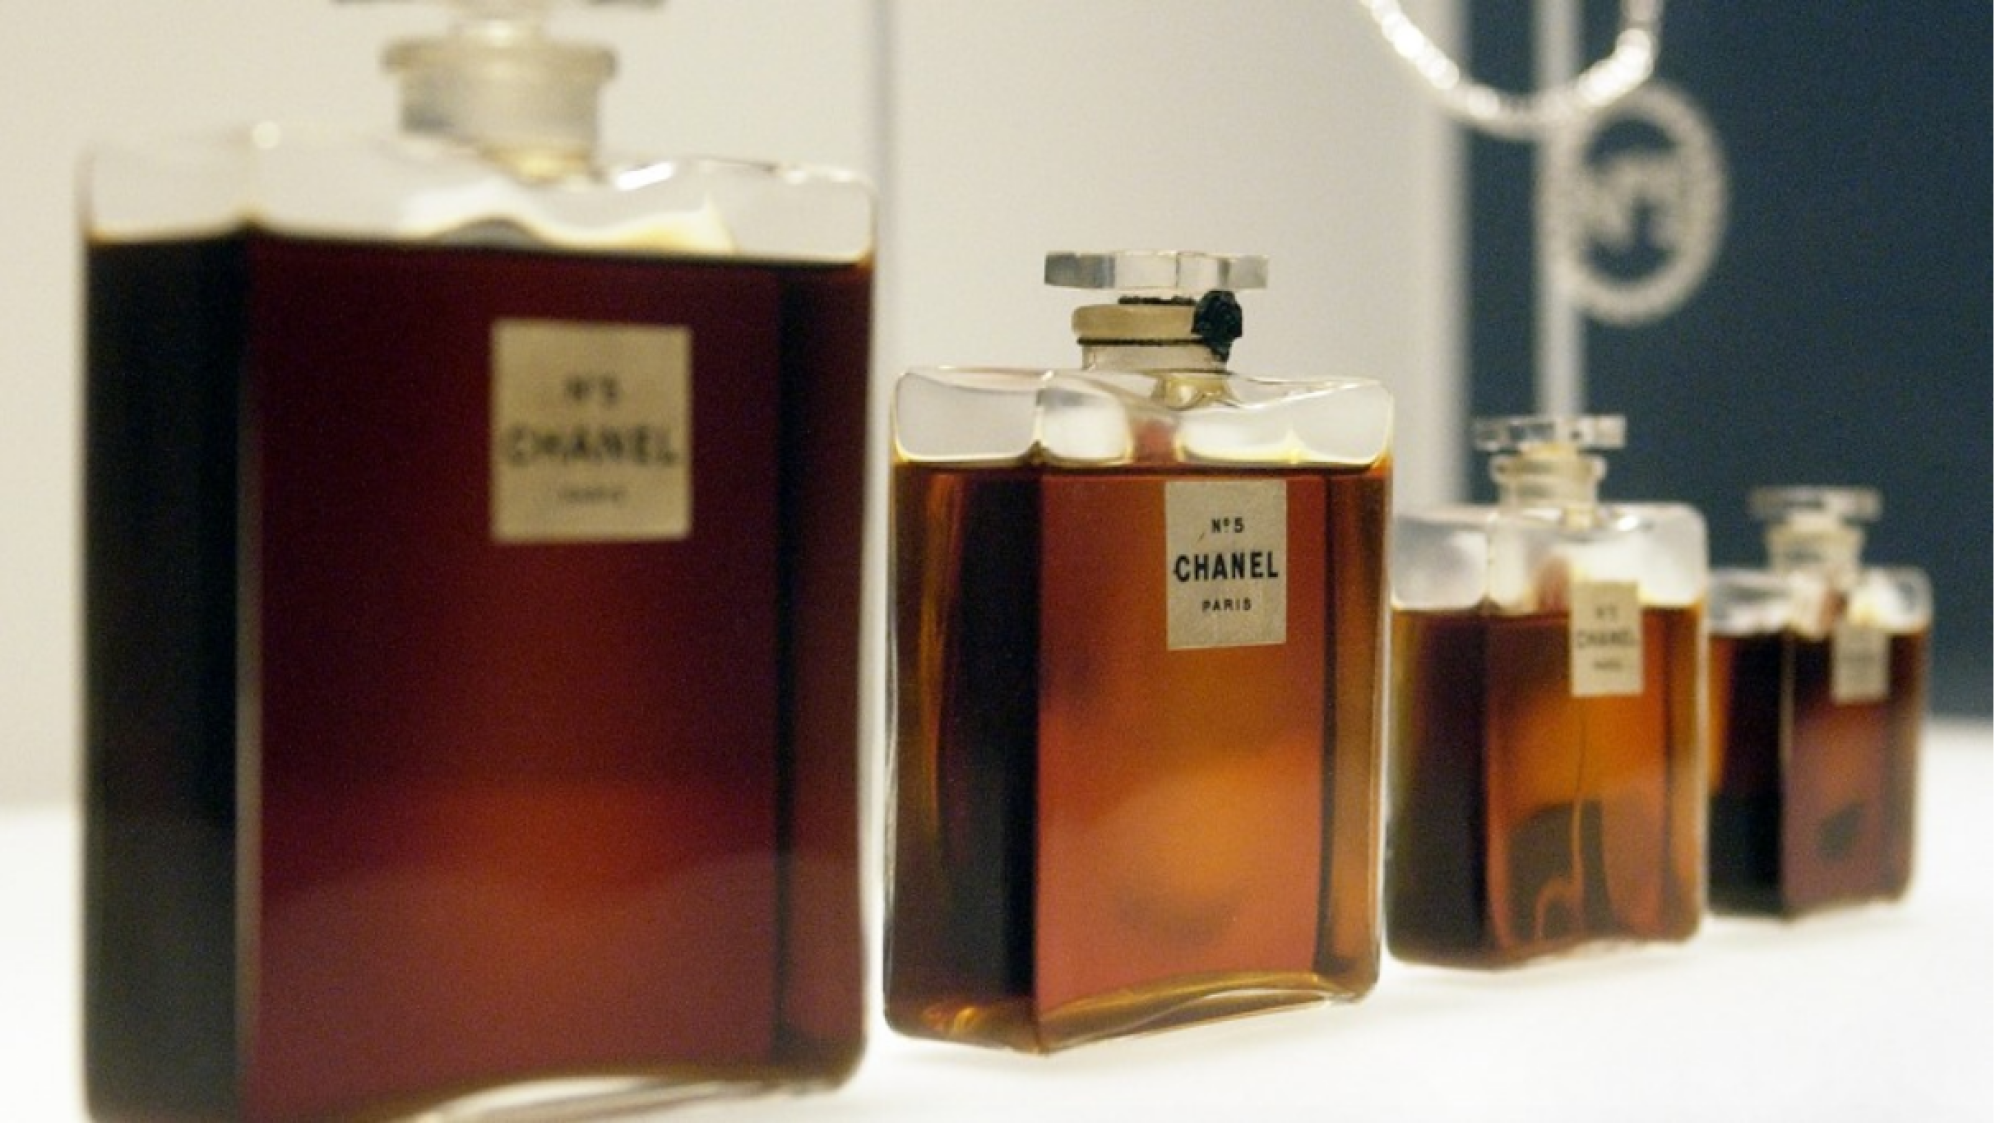 Esta es la polémica historia del perfume Nº 5 de Chanel - Los Angeles Times